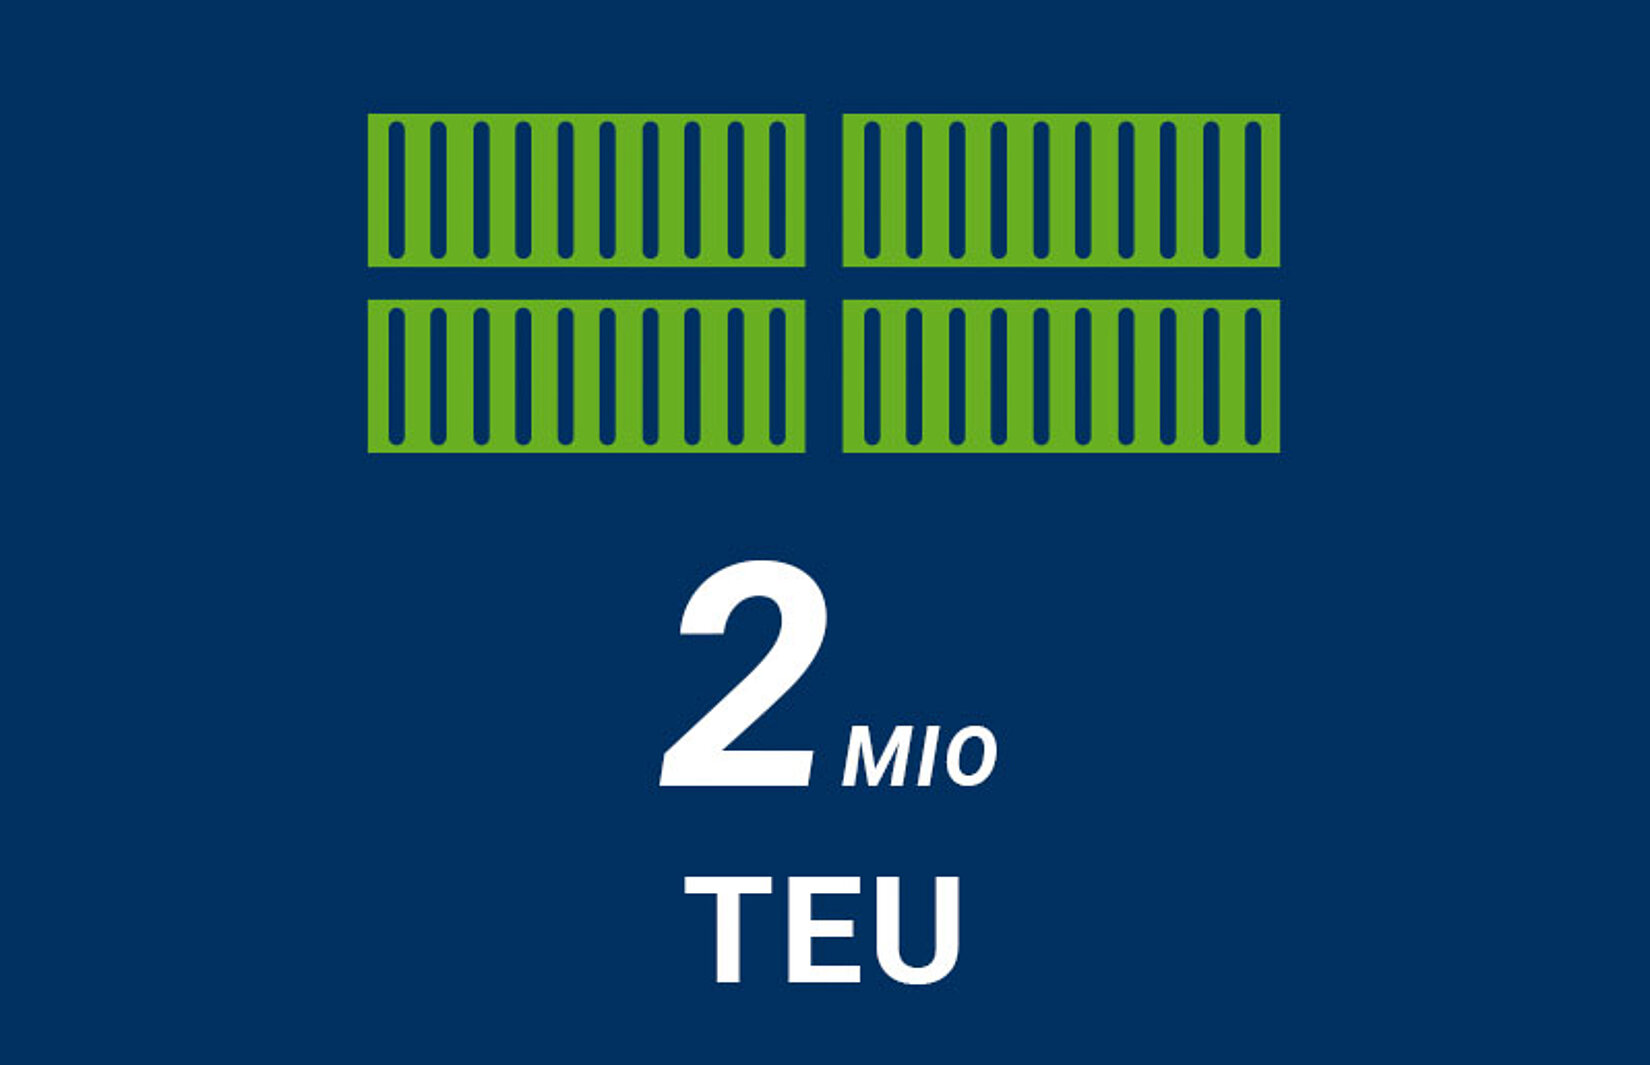 Grafik mit vier Containern für TEU